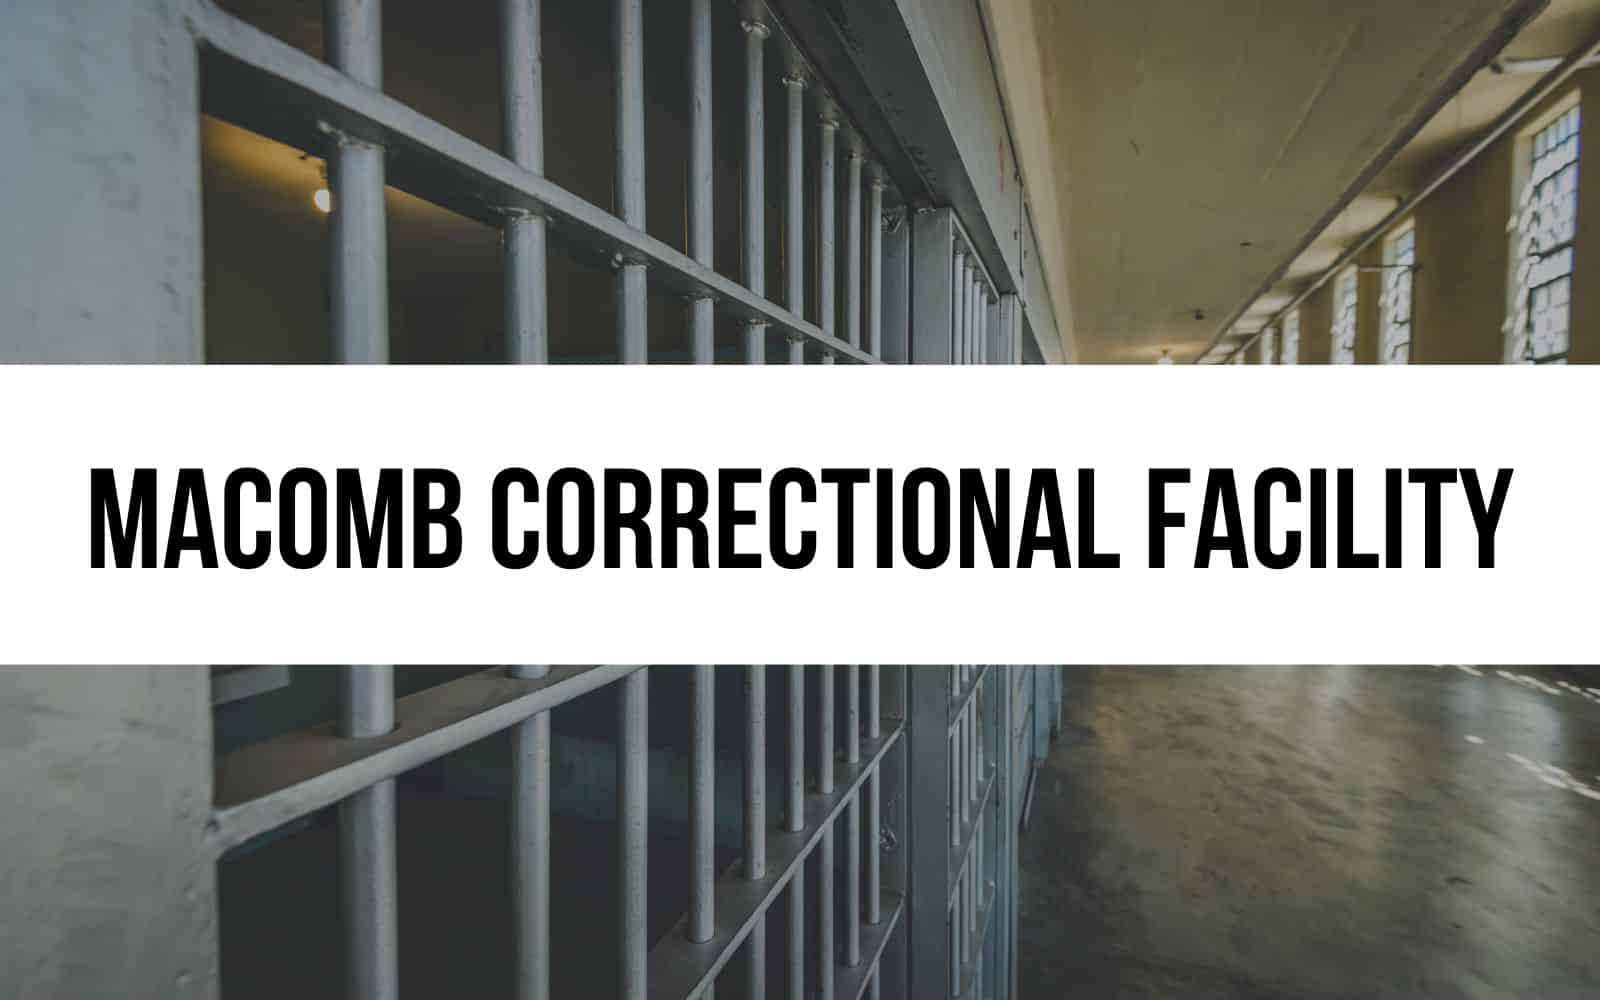 Macomb Correctional Facility